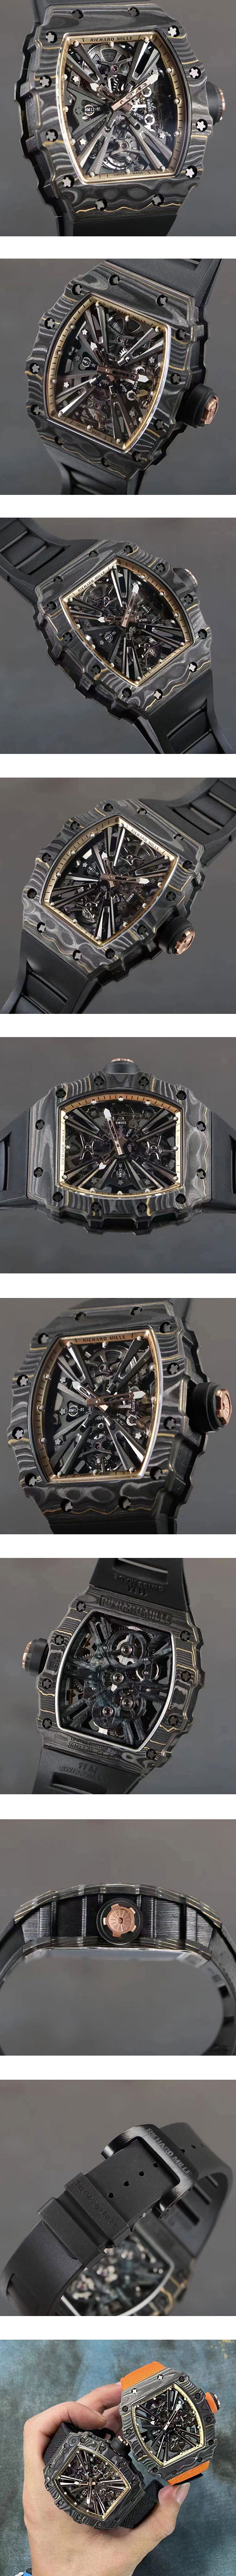 リシャール·ミル RM 12-01 トゥールビヨン ブランド時計コピー